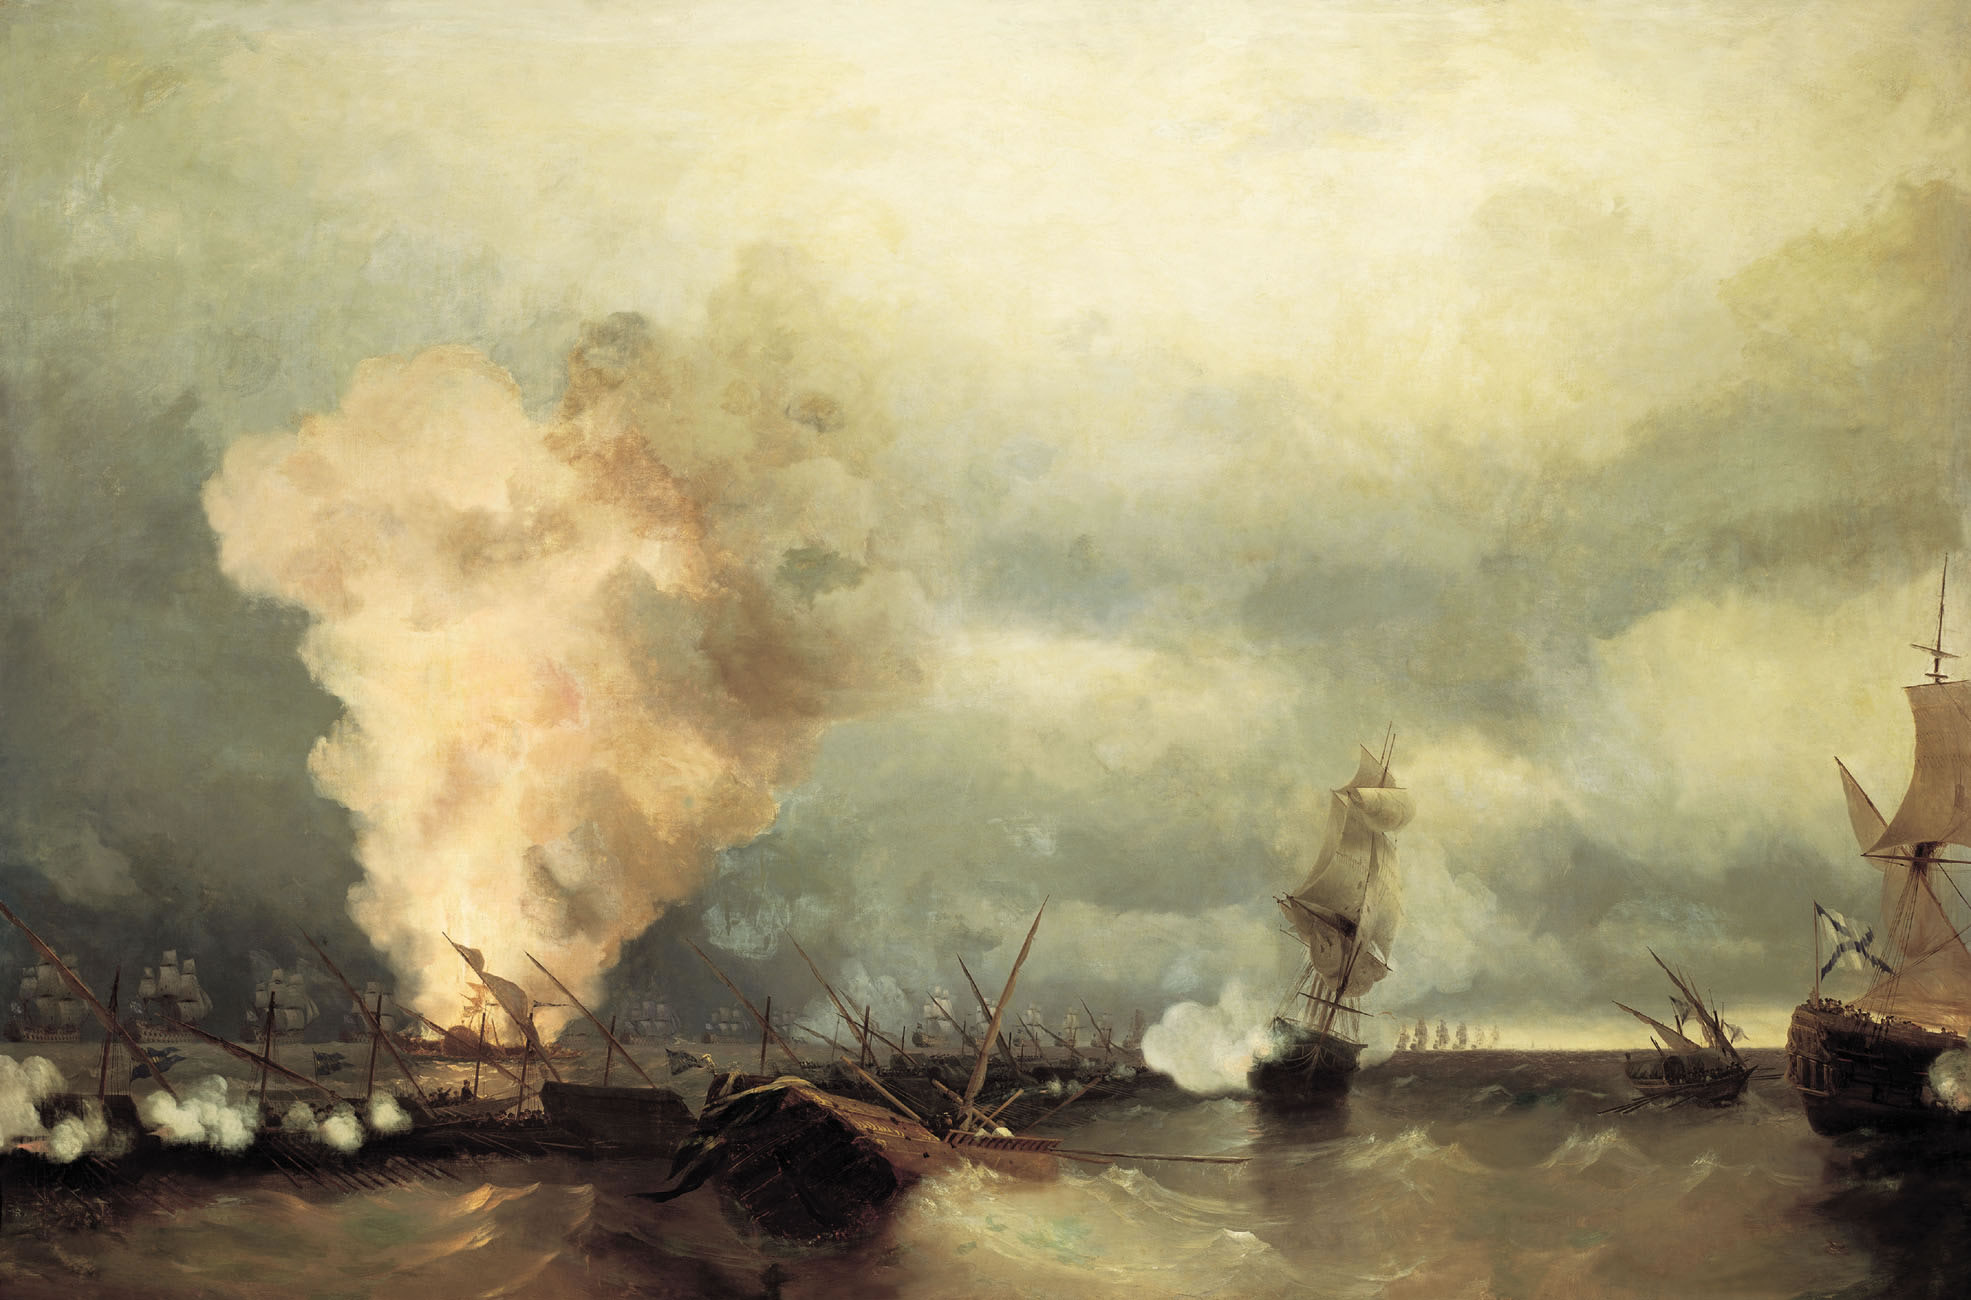 Иван Айвазовский. Морское сражение при Выборге 29 июня 1790 г. 1846.